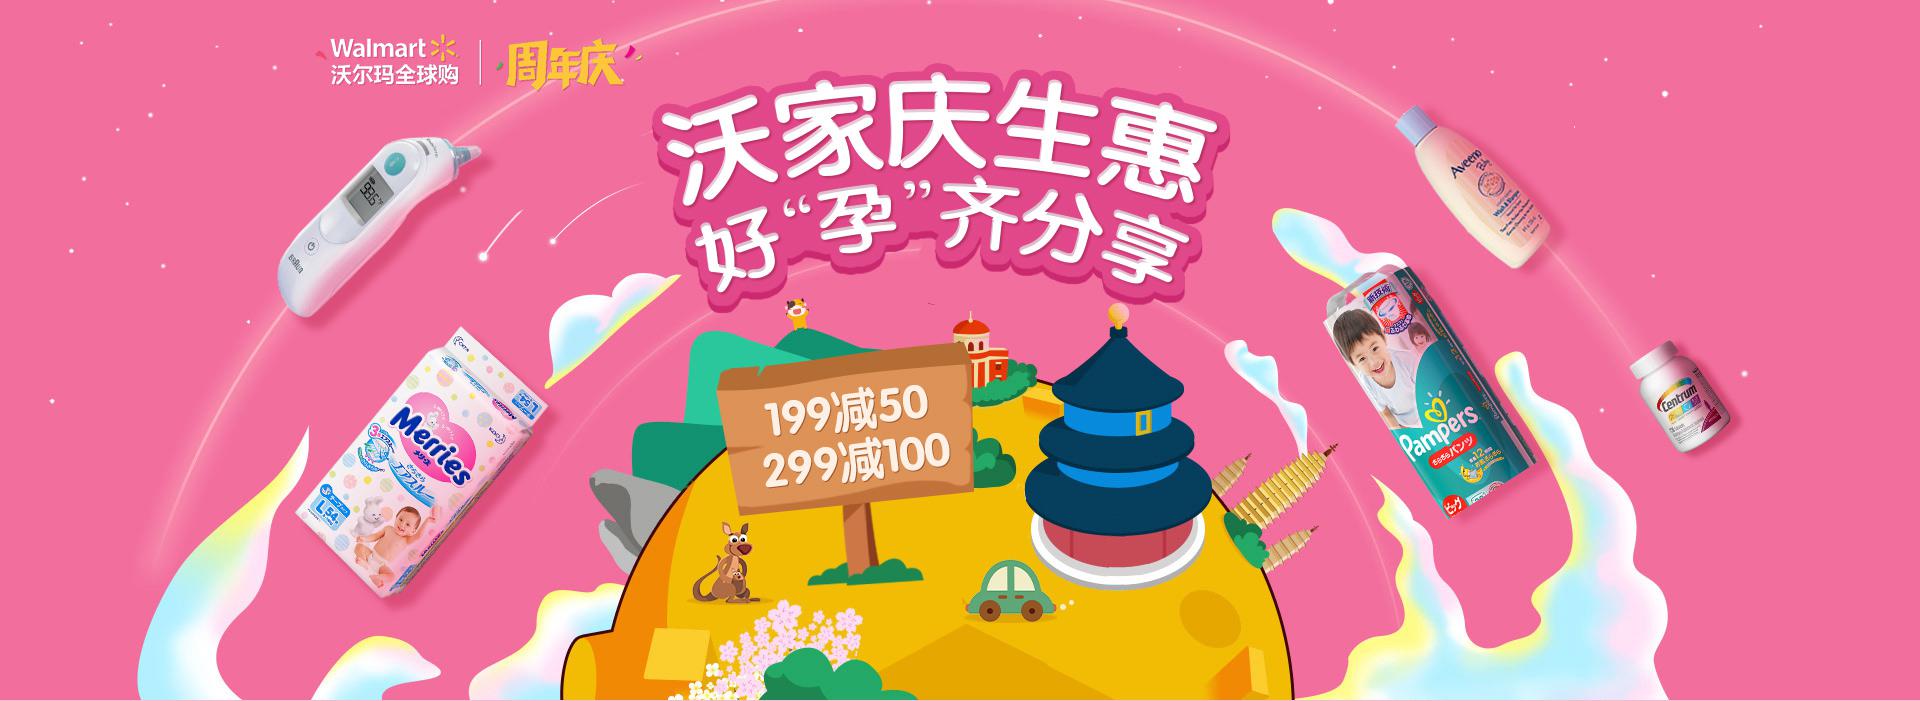 京东 沃尔玛全球购官方旗舰店 周年庆母婴会场